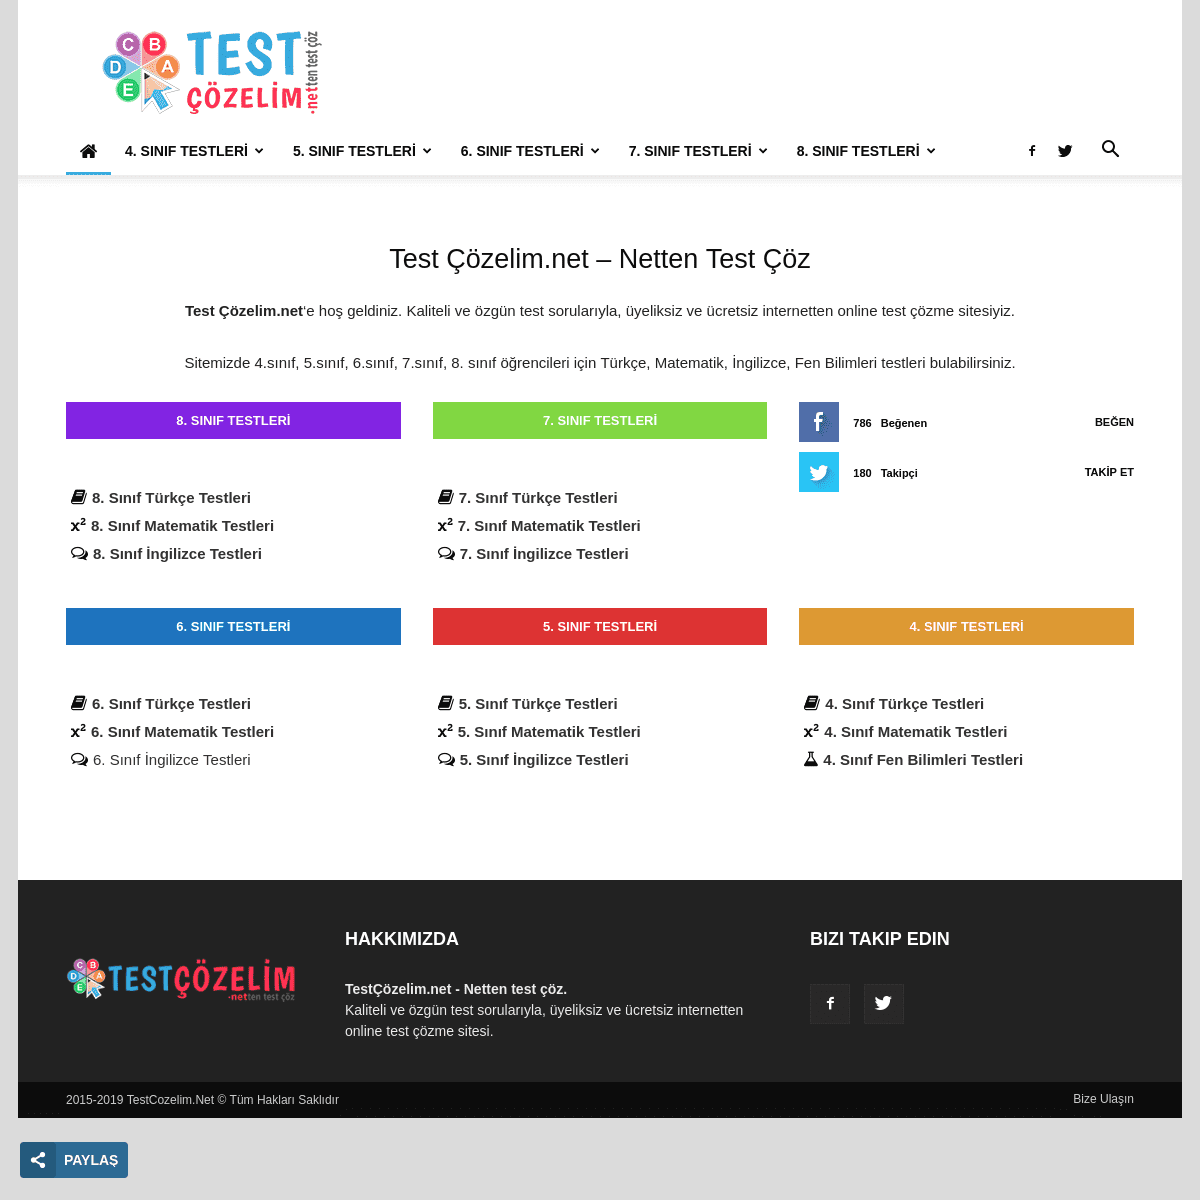 Test Çözelim.net - Netten Test Çöz - İnteraktif / Online Test Soruları